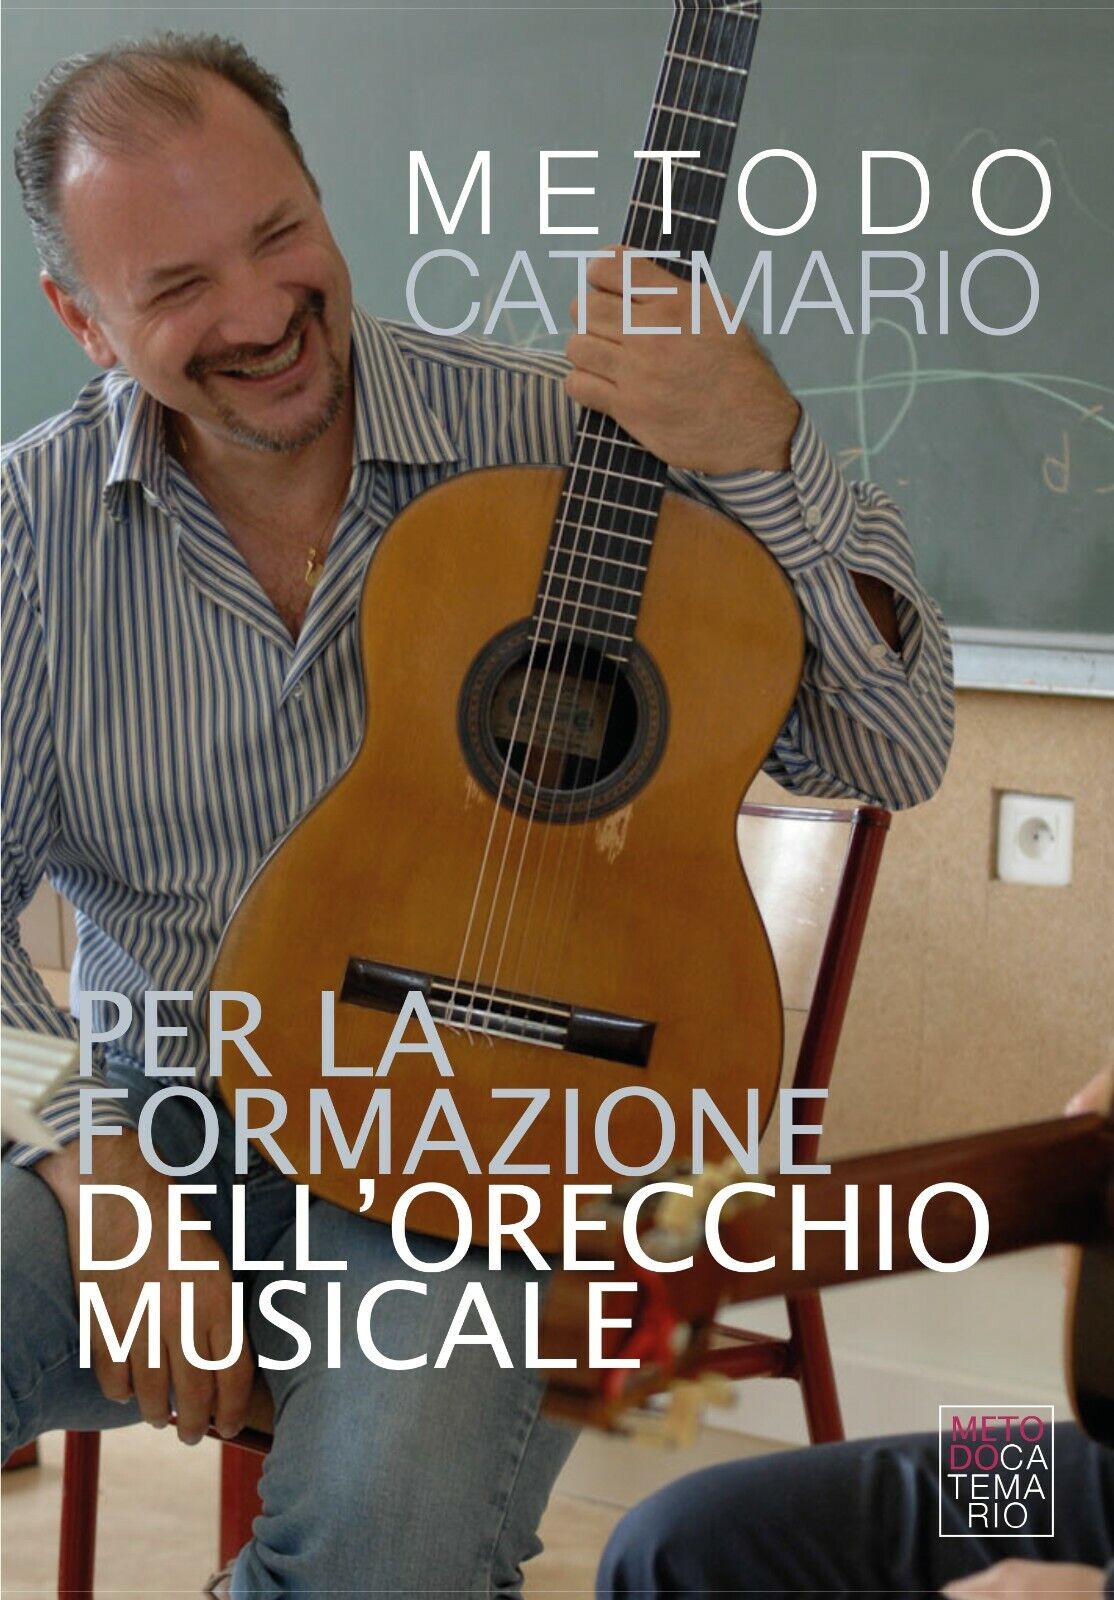 Metodo Catemario per la formazione delL'orecchio musicale di Edoardo Catemario,  libro usato